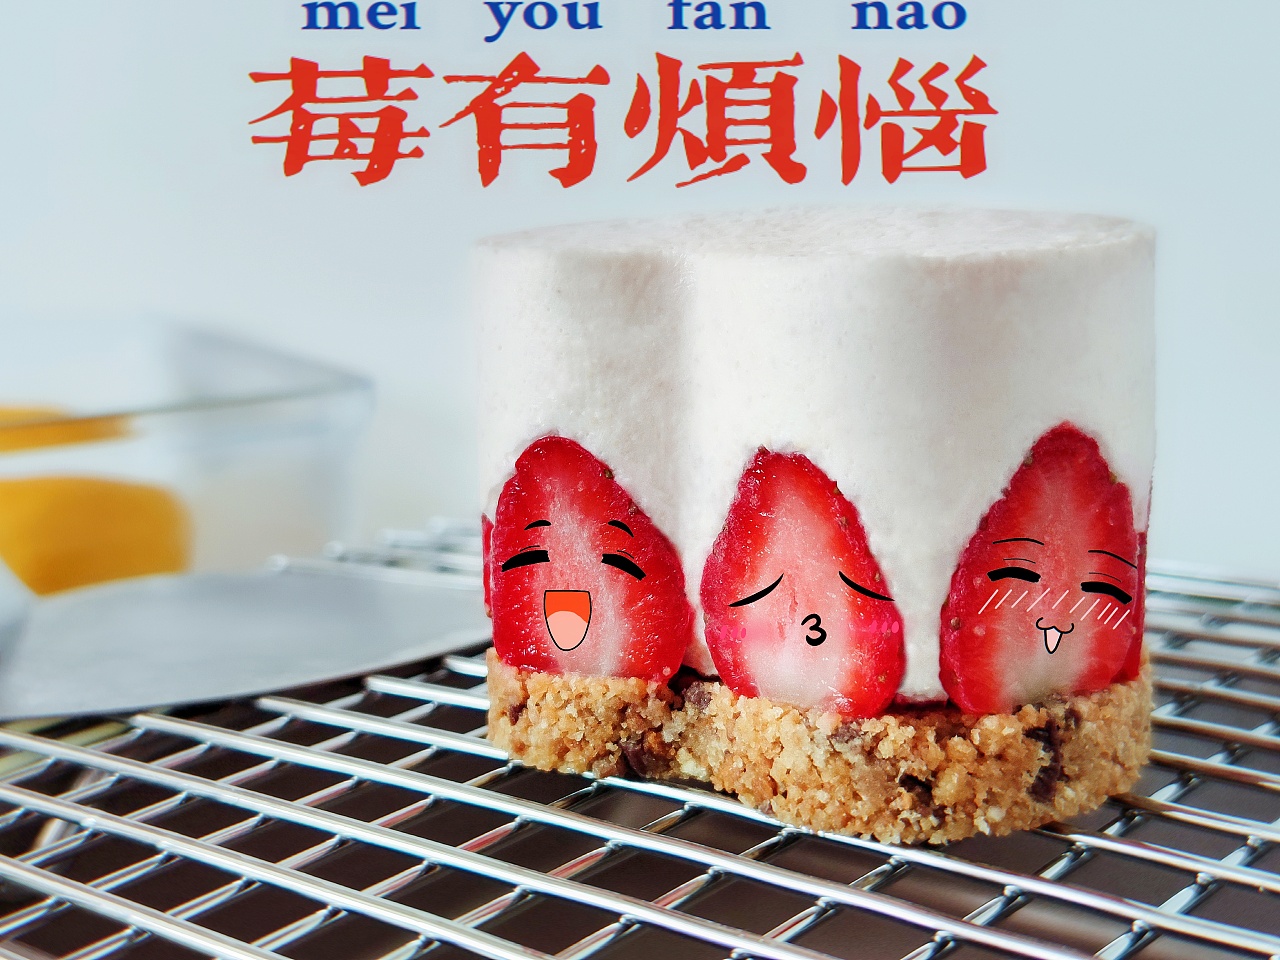 草莓甜品蛋糕高清摄影大图-千库网